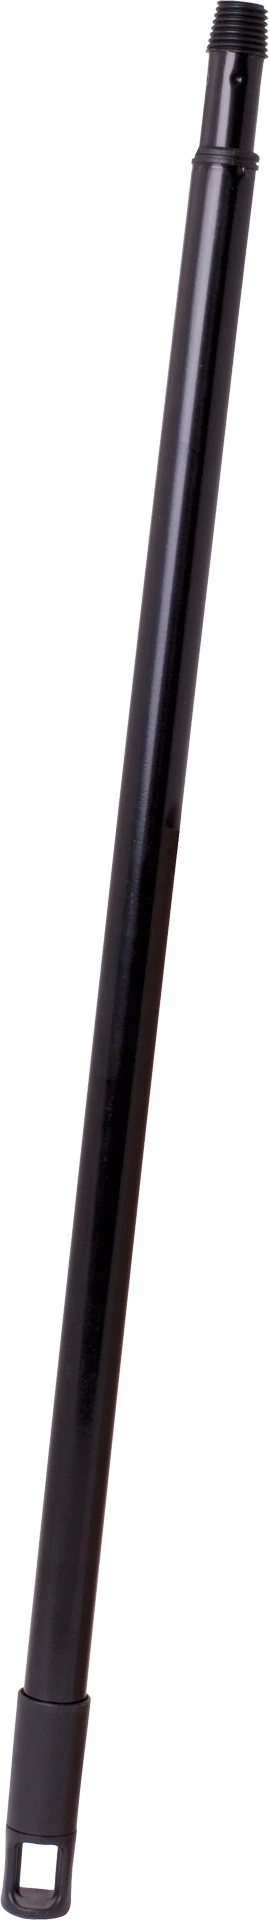 telescopic handle